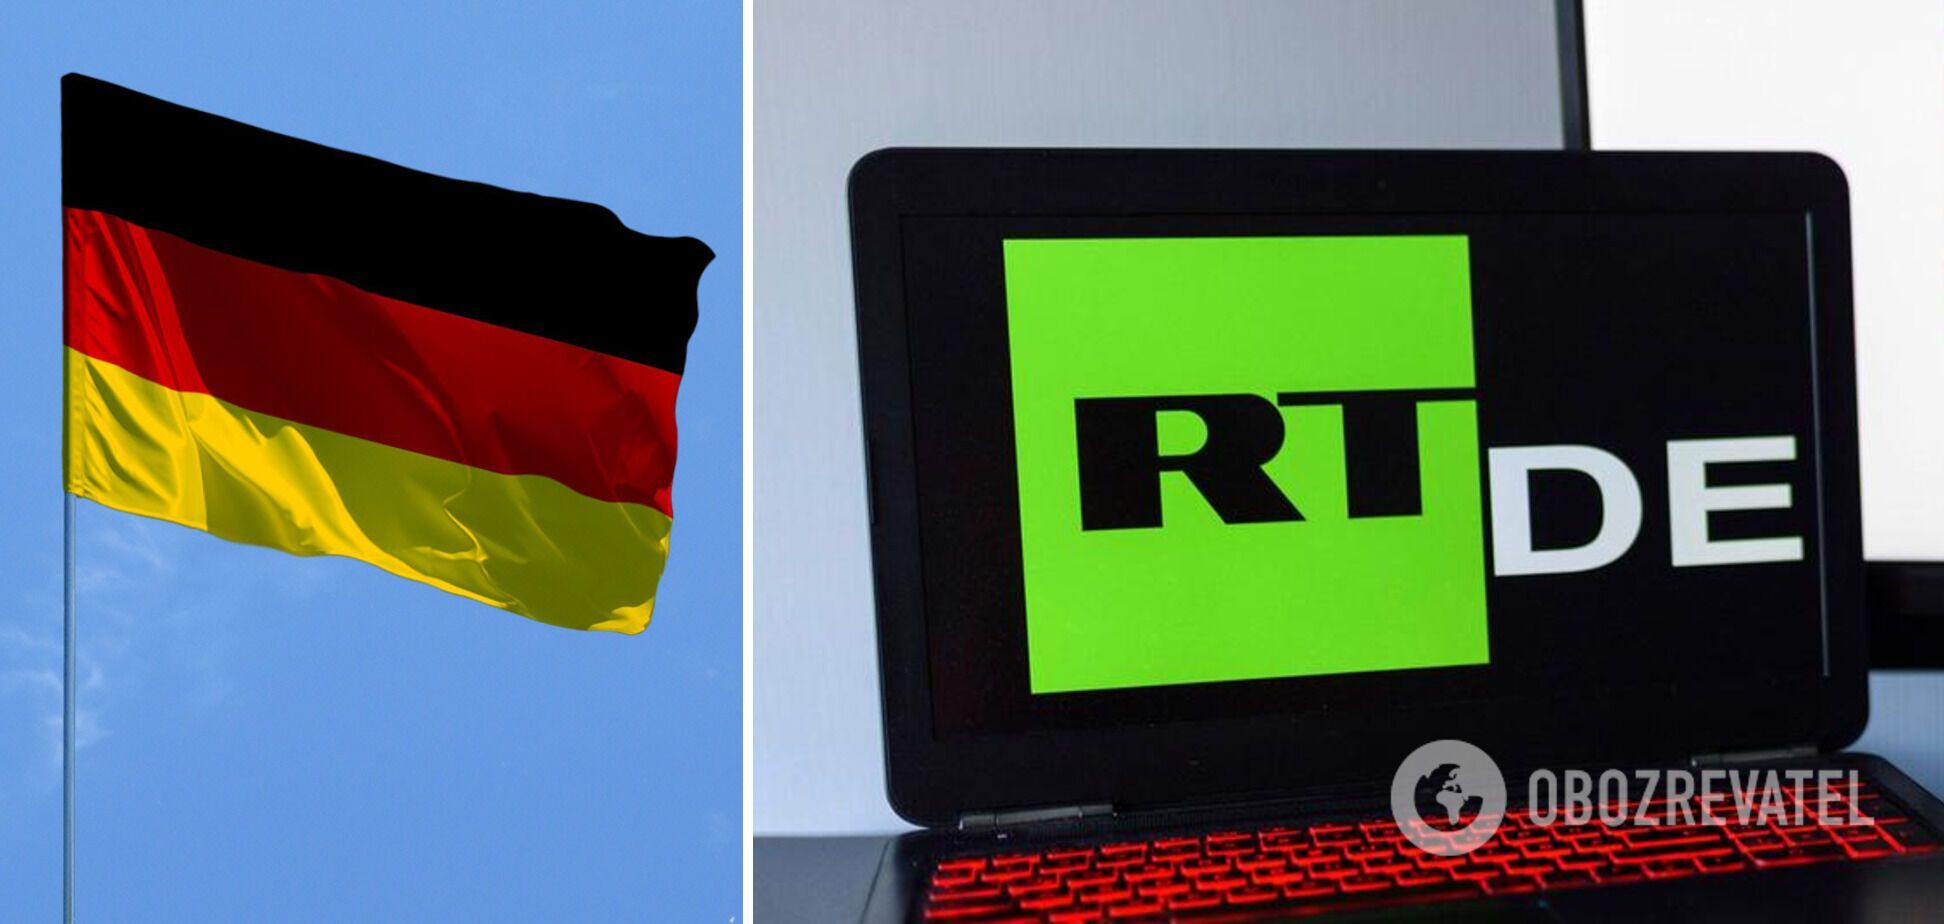 Телеканал RT DE прекратил свою деятельность в Германии